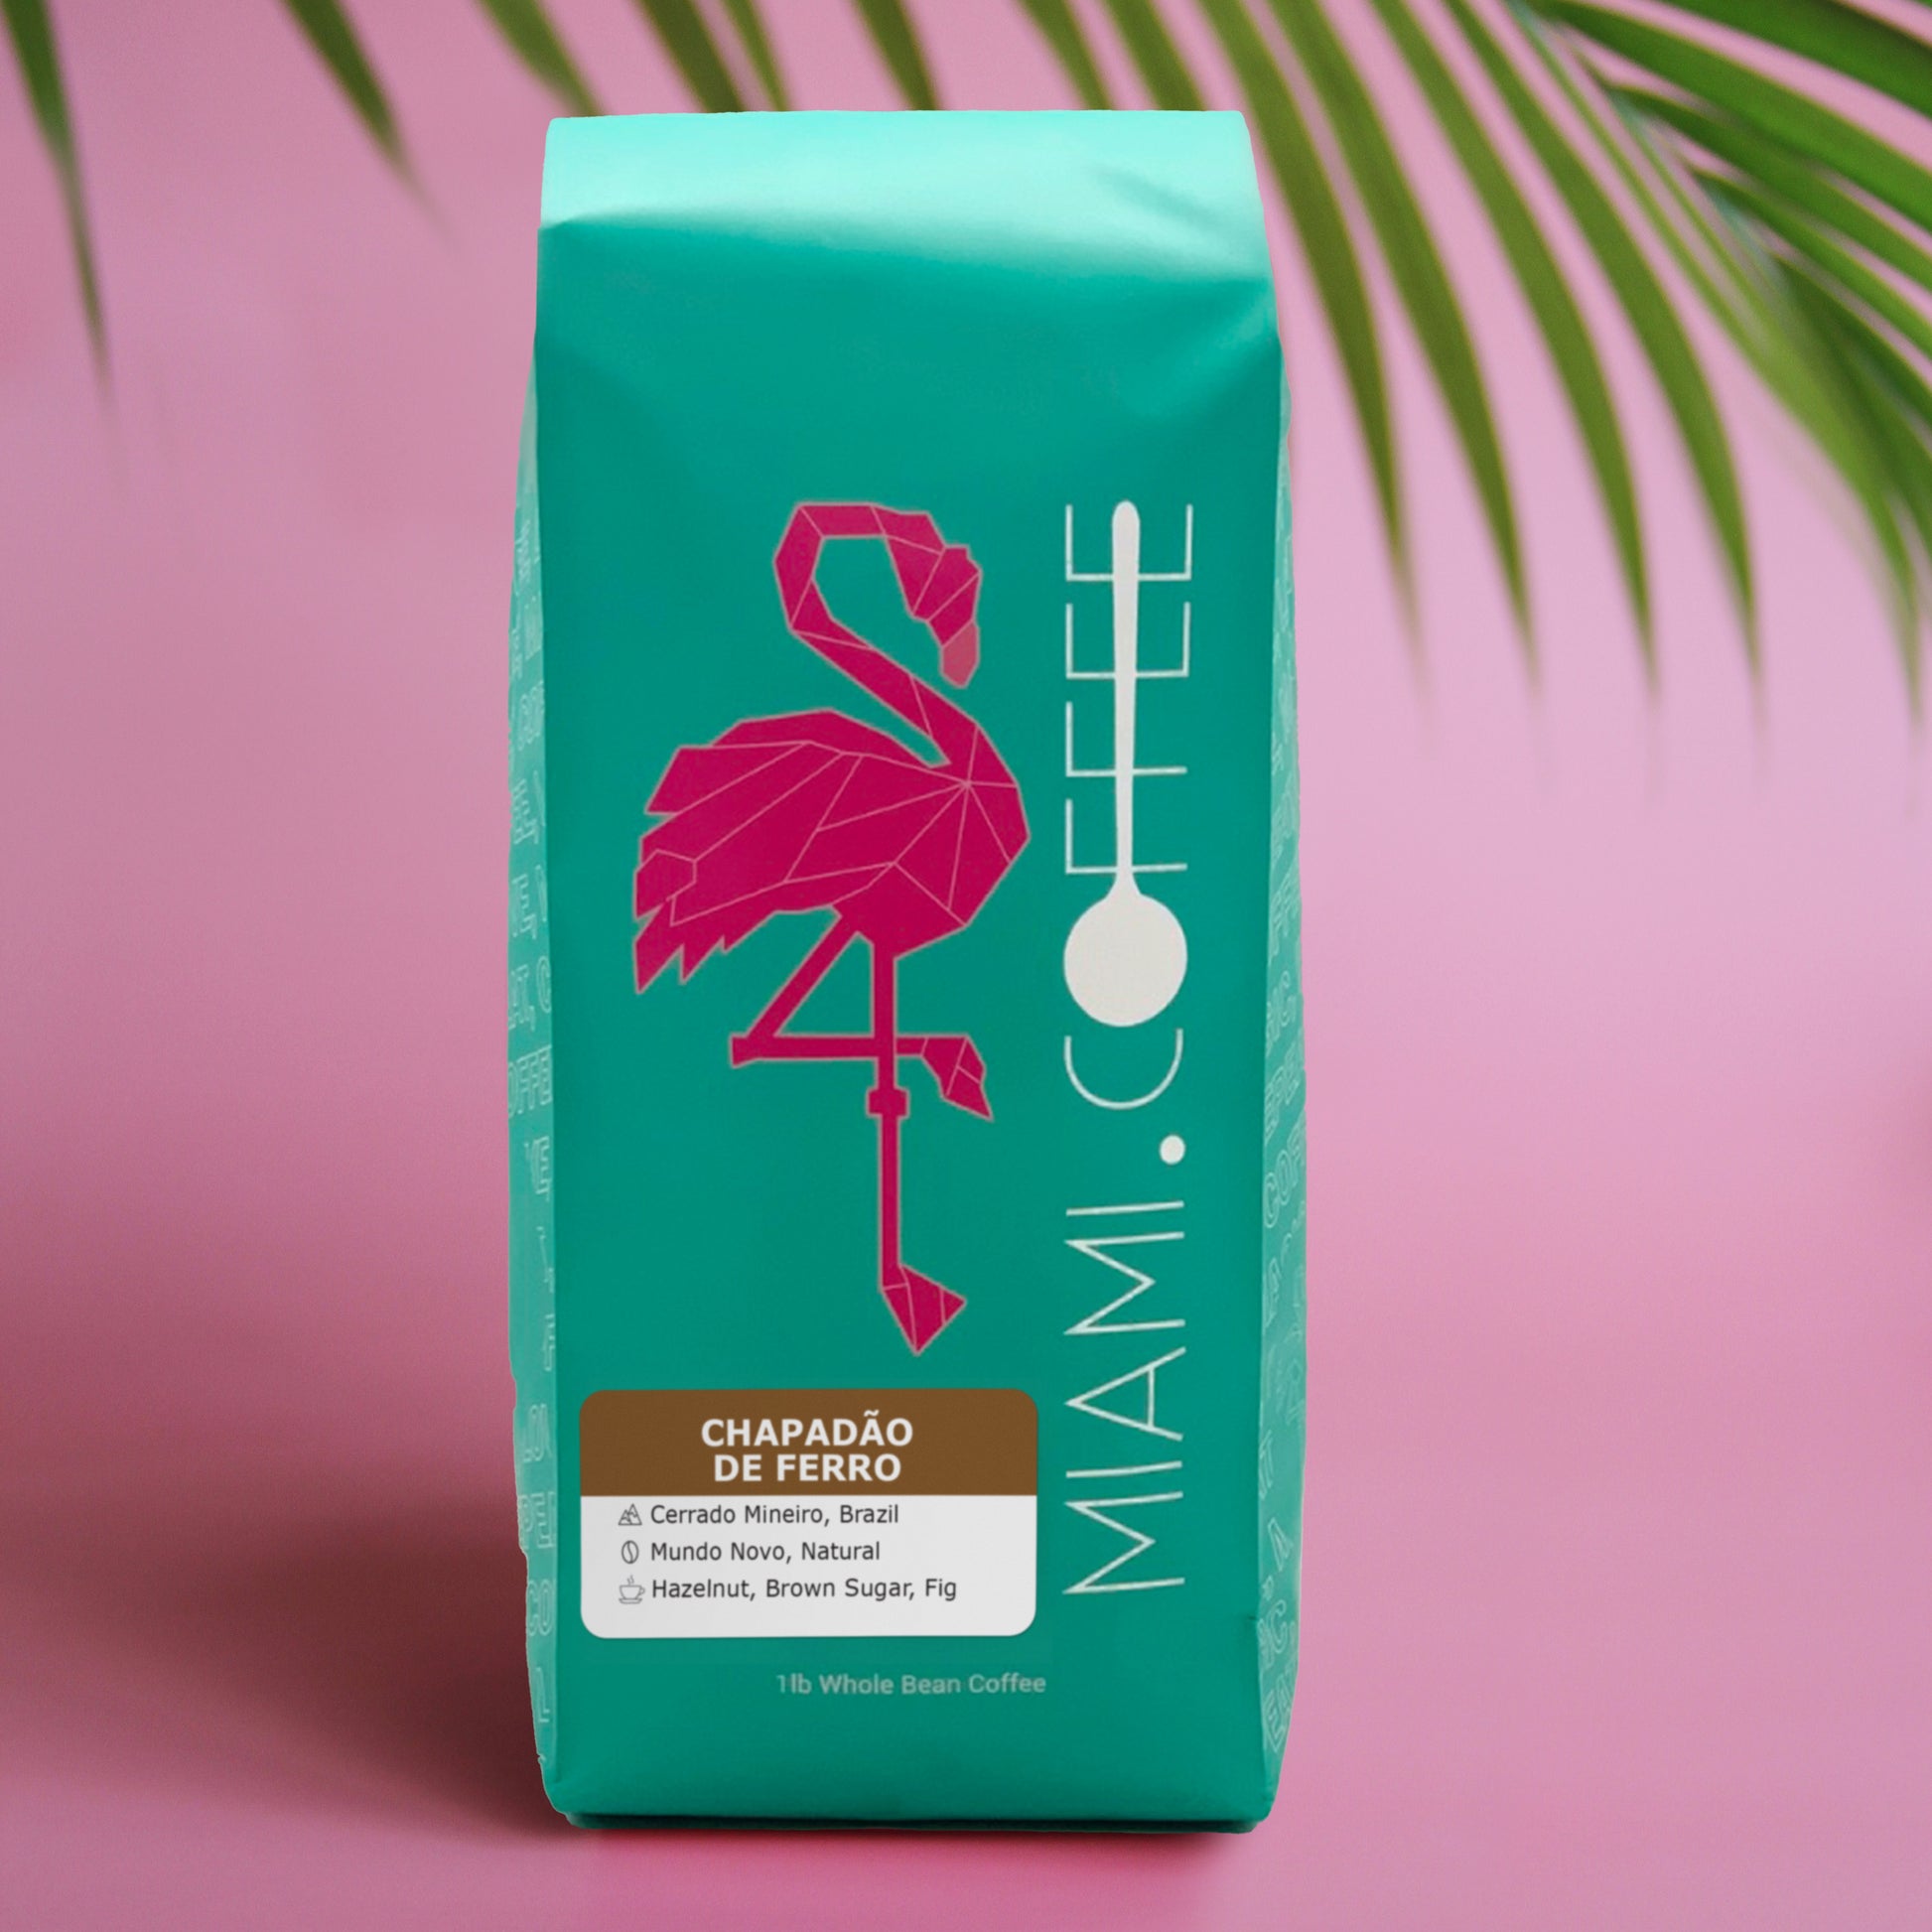 1 pound bag of Miami dot Coffee - Chapadão de Ferro, from Cerrado Mineiro Brazil. Mundo Novo Cultivar, Natural Process. Tasting Notes - Hazelnut, Brown Sugar, Fig